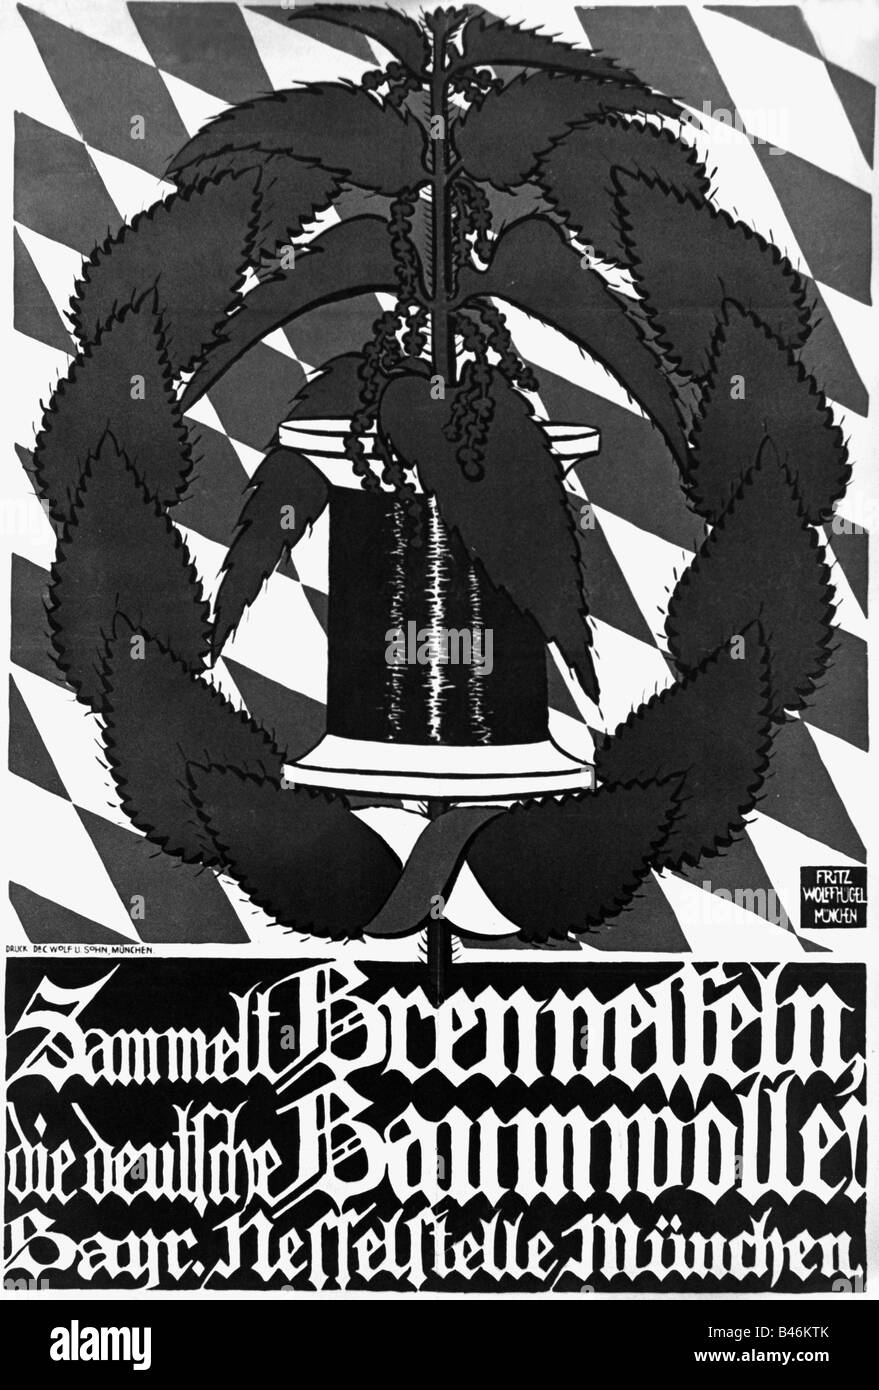 events, First World War / WWI, propaganda, poster 'Sammelt Brennesseln, die deutsche Baumwolle!' (Collect nettles, the German cotton!), Munich, Germany, 20th century, Stock Photo